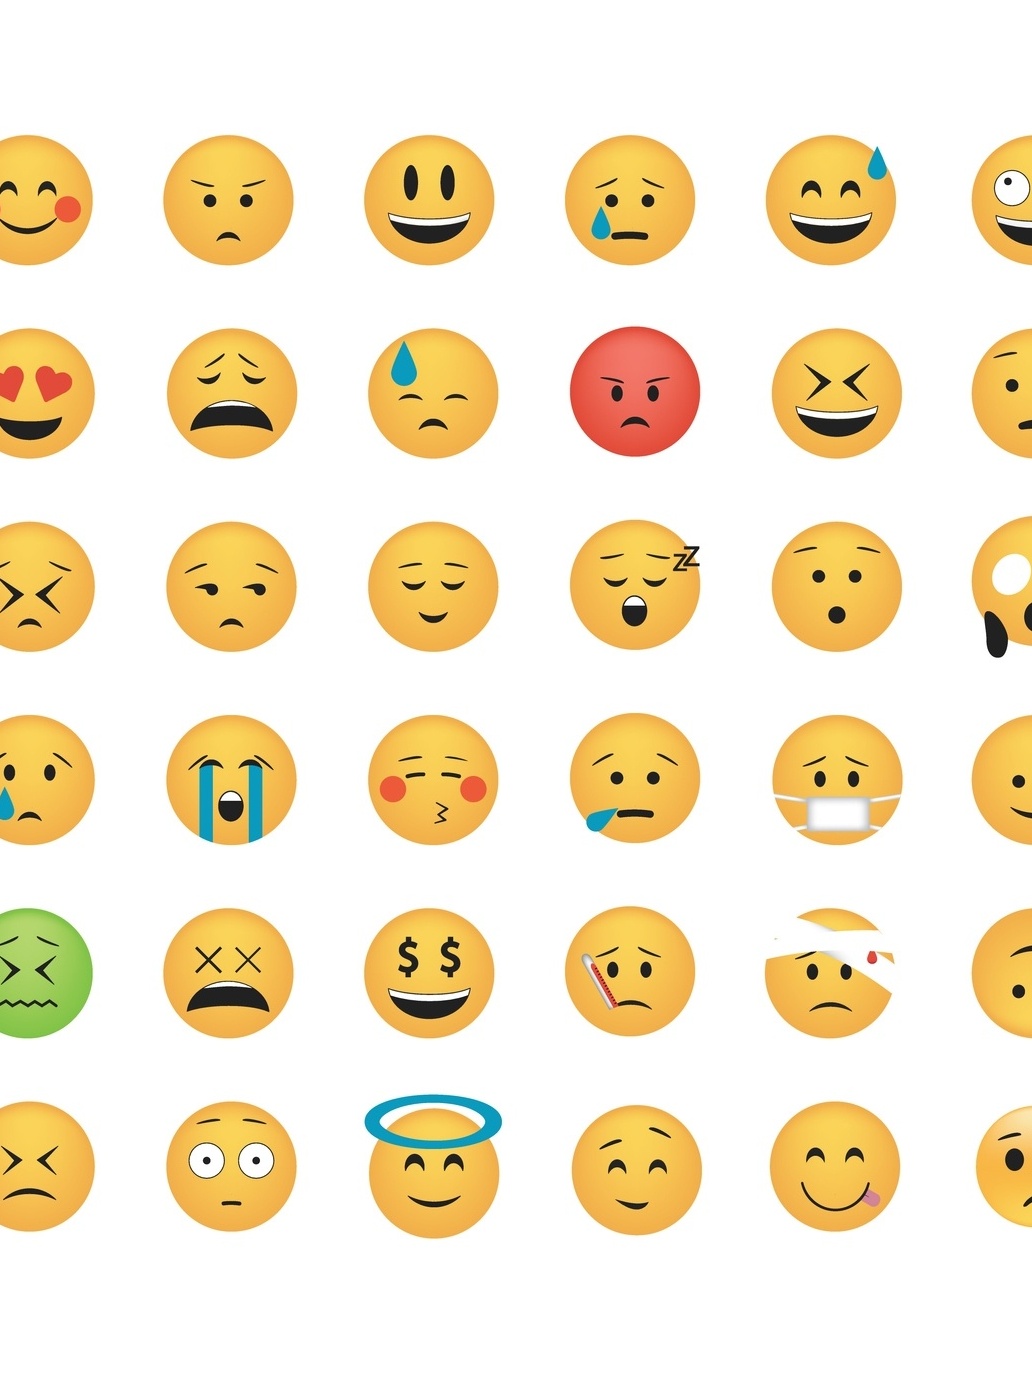 O que significam os novos emojis? Lista traz principais explicações